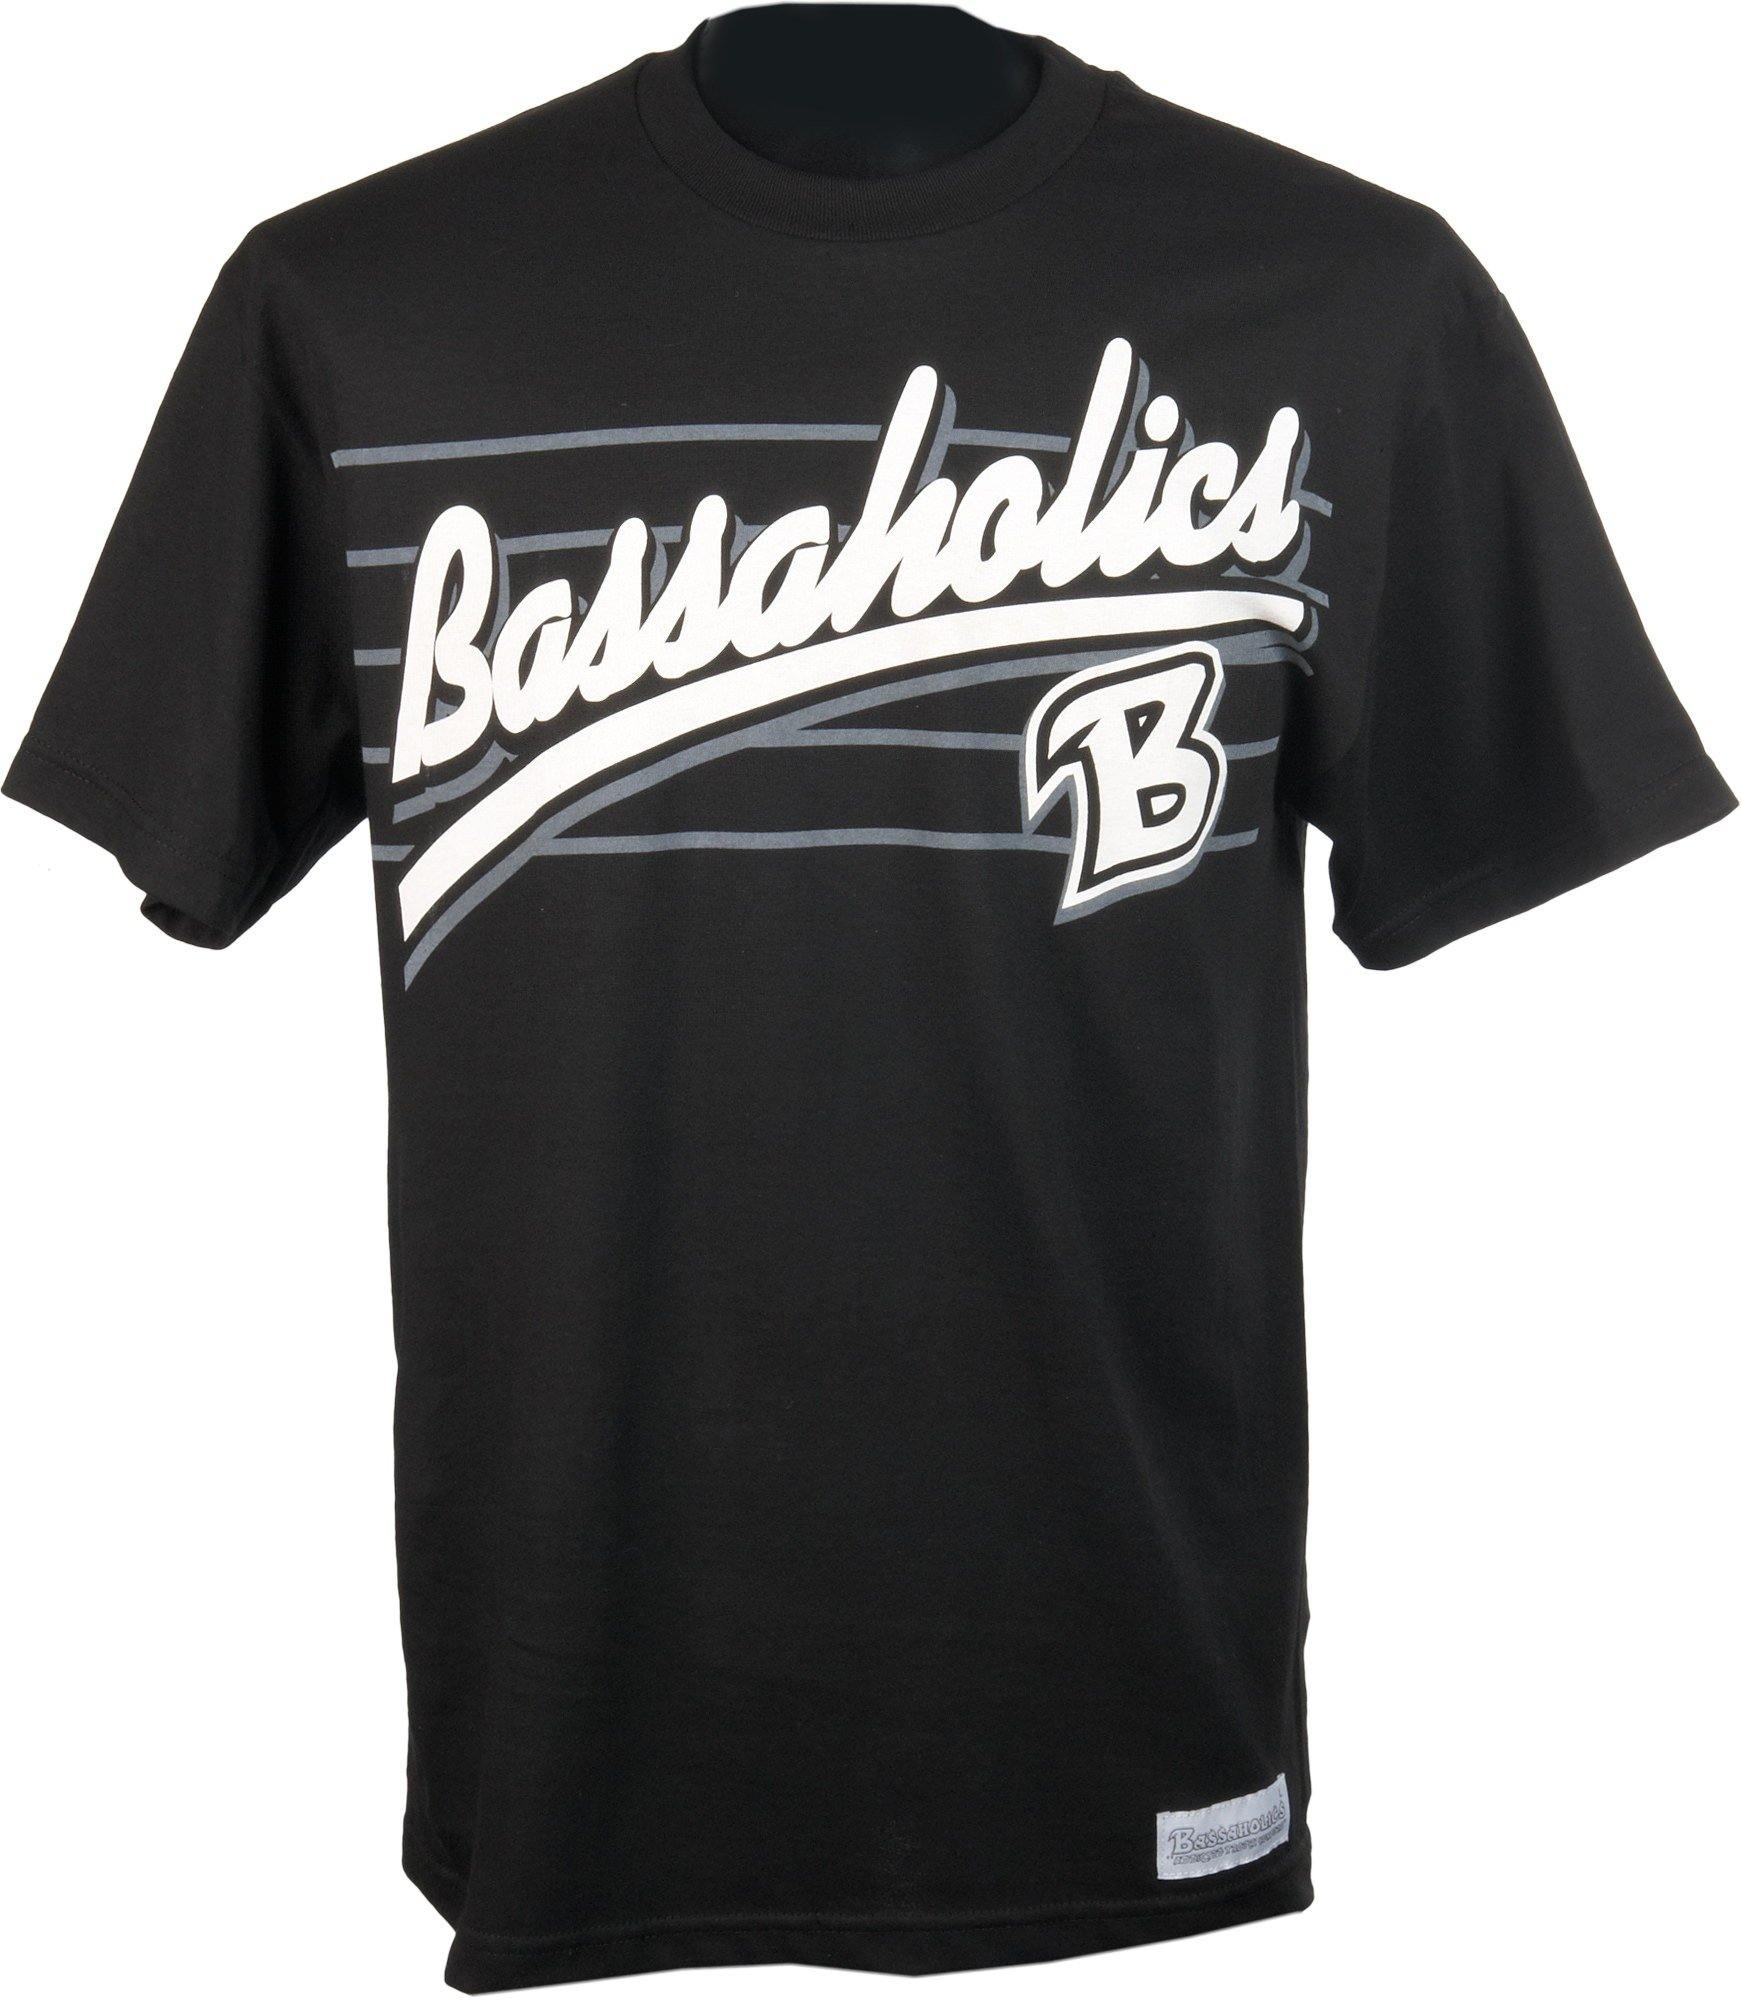 B Metal Bass Fishing Tshirt – Bassaholics